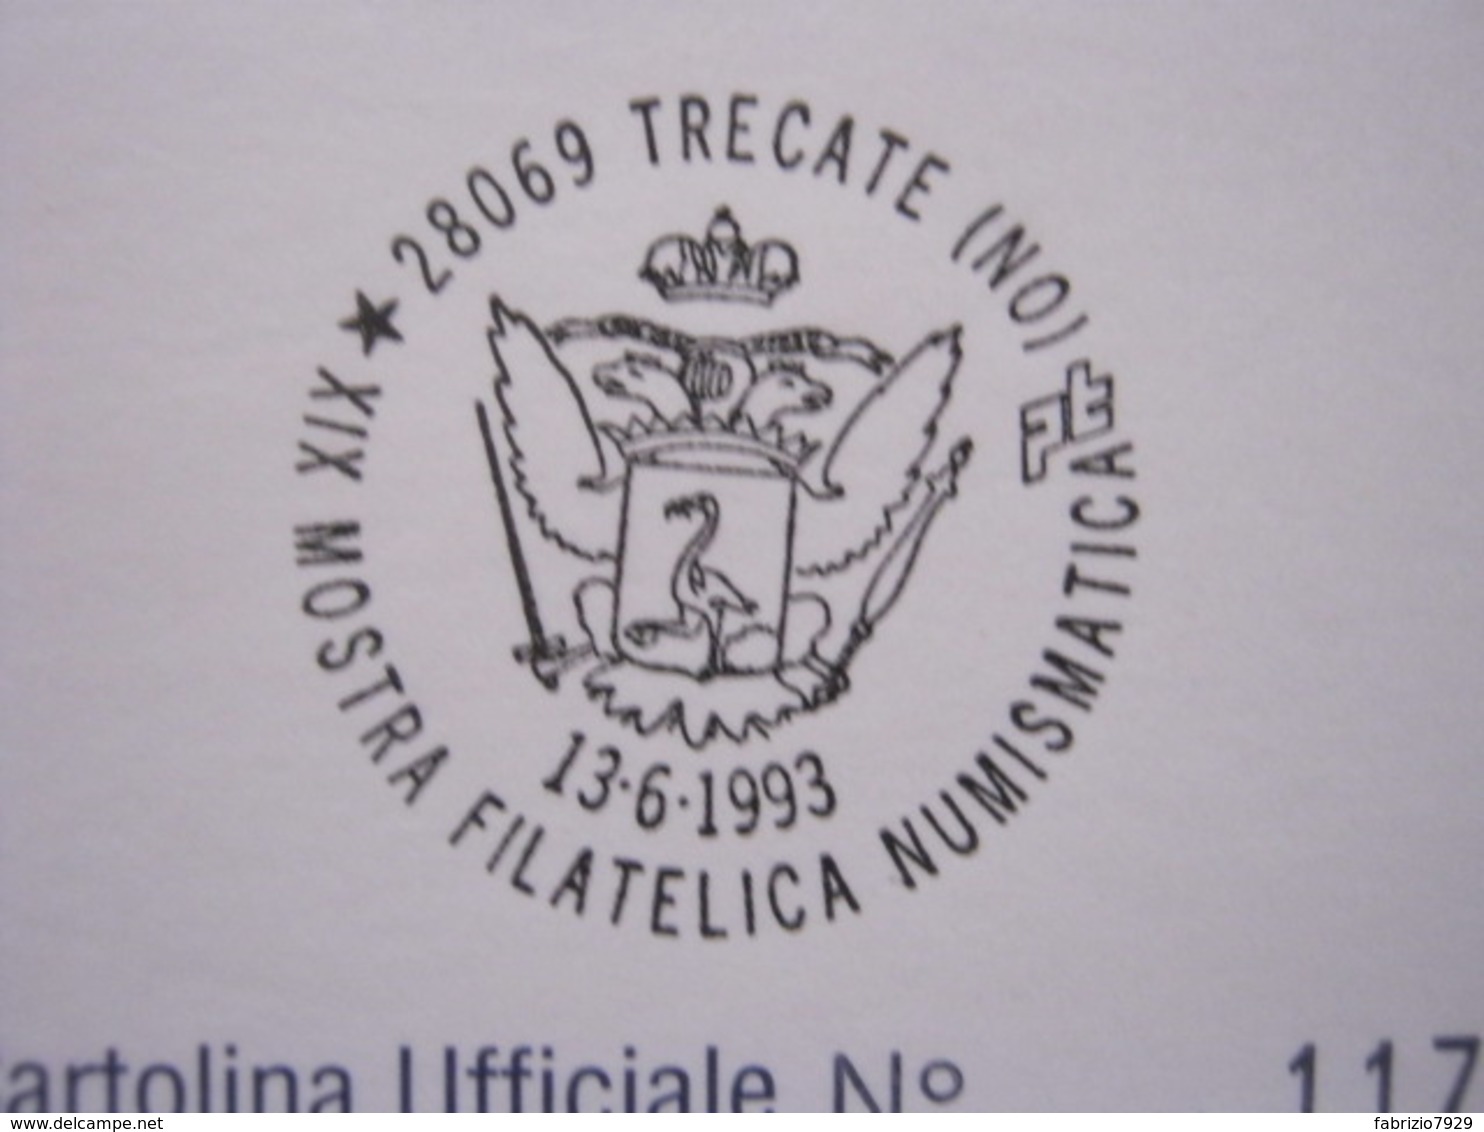 A.12 ITALIA ANNULLO 1993 TRECATE NOVARA STEMMA ARALDICA SPADA FENICOTTERO UCCELLO BIRD CARD CASTELLO - Fenicotteri